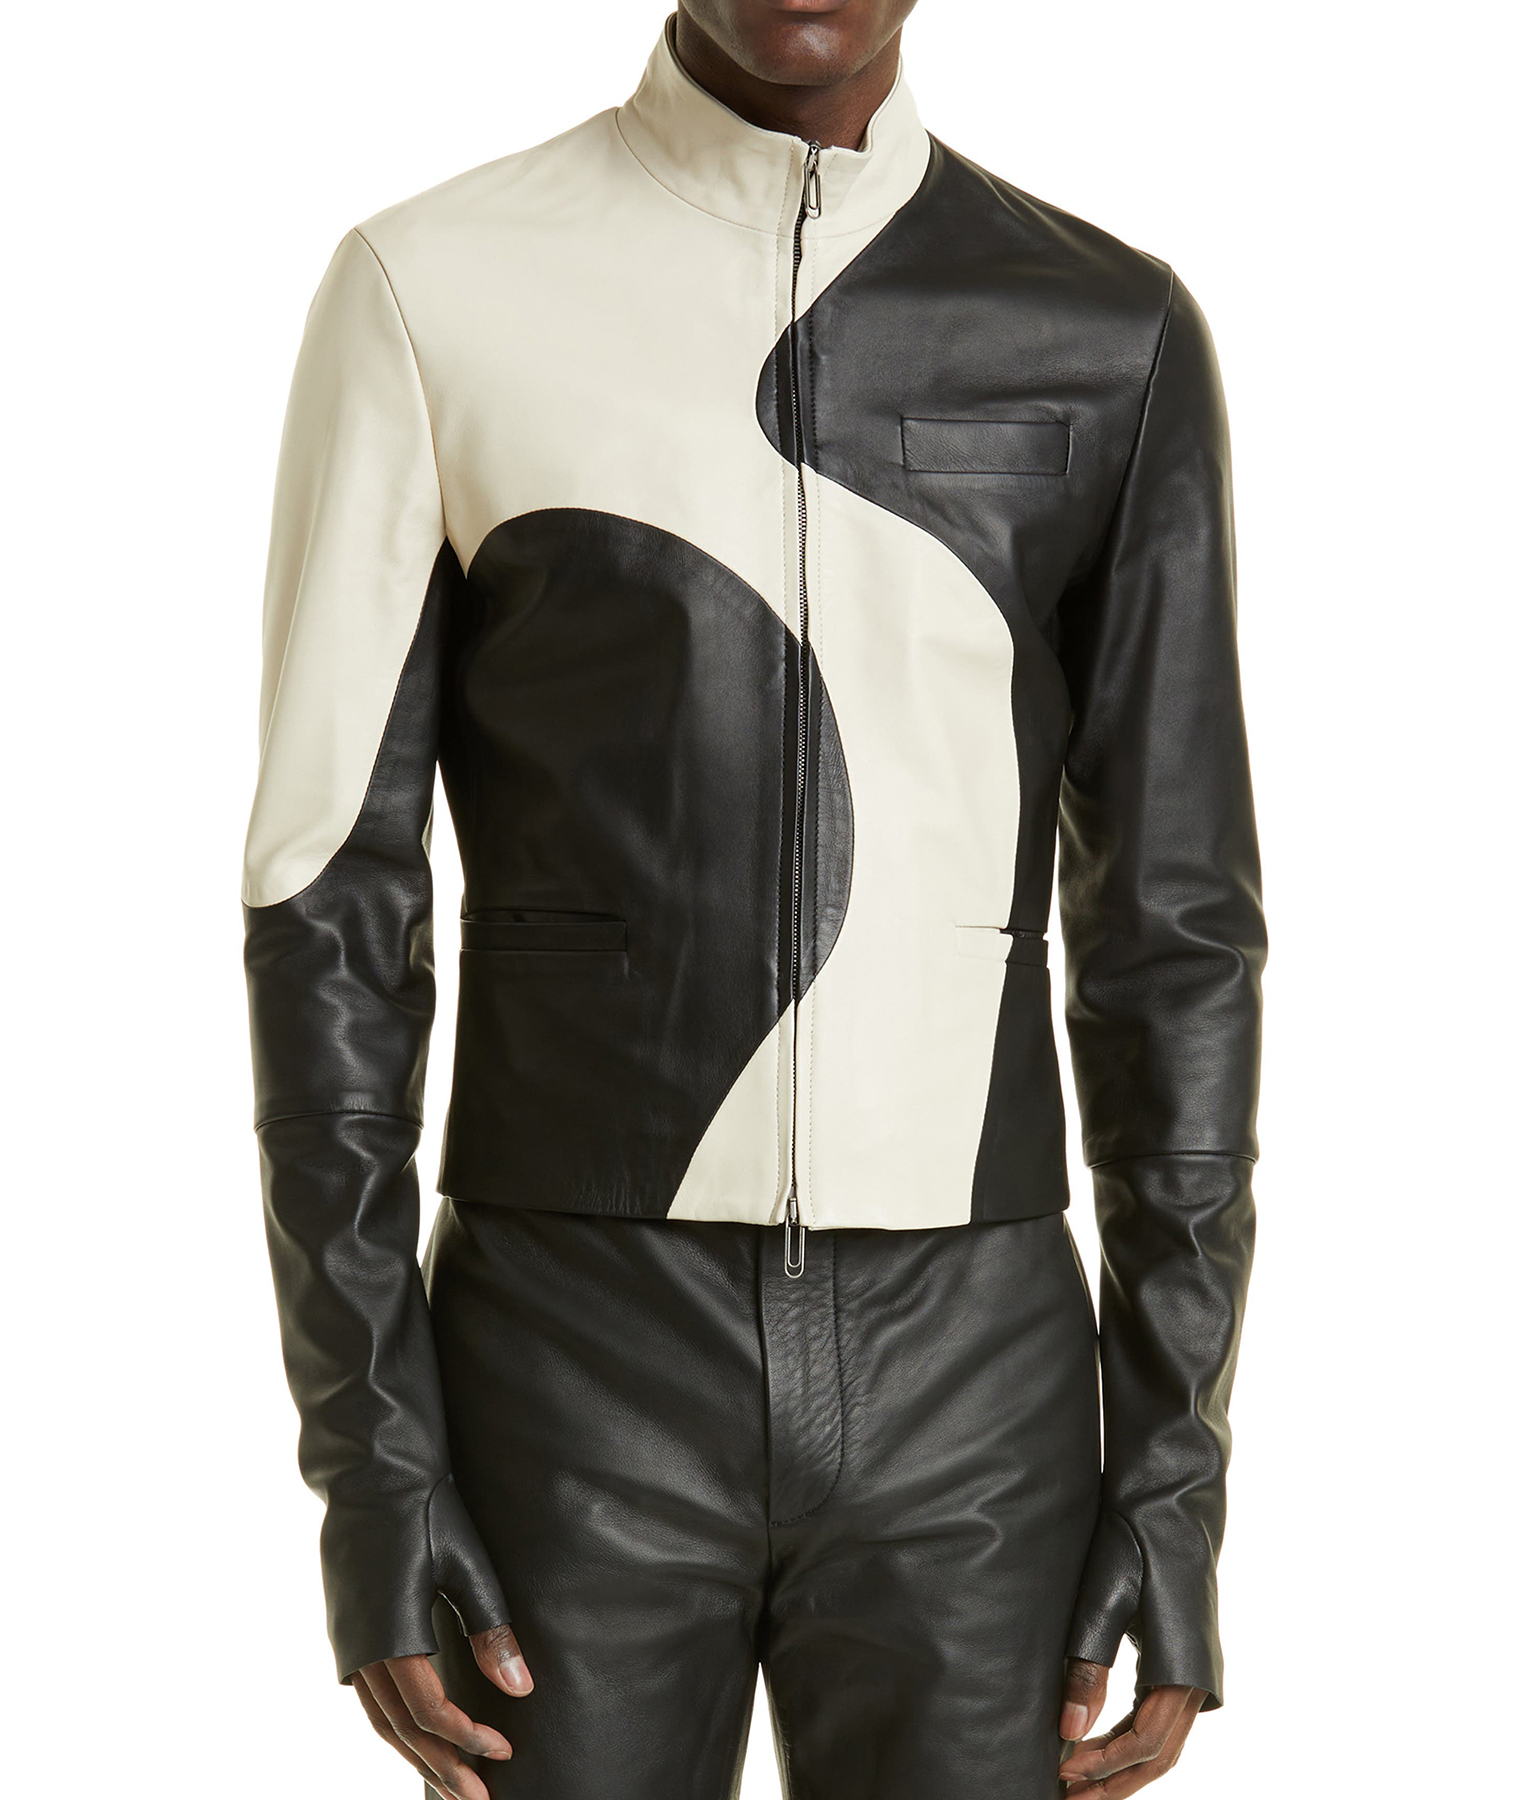 Usher Black and white Leather Jacket6